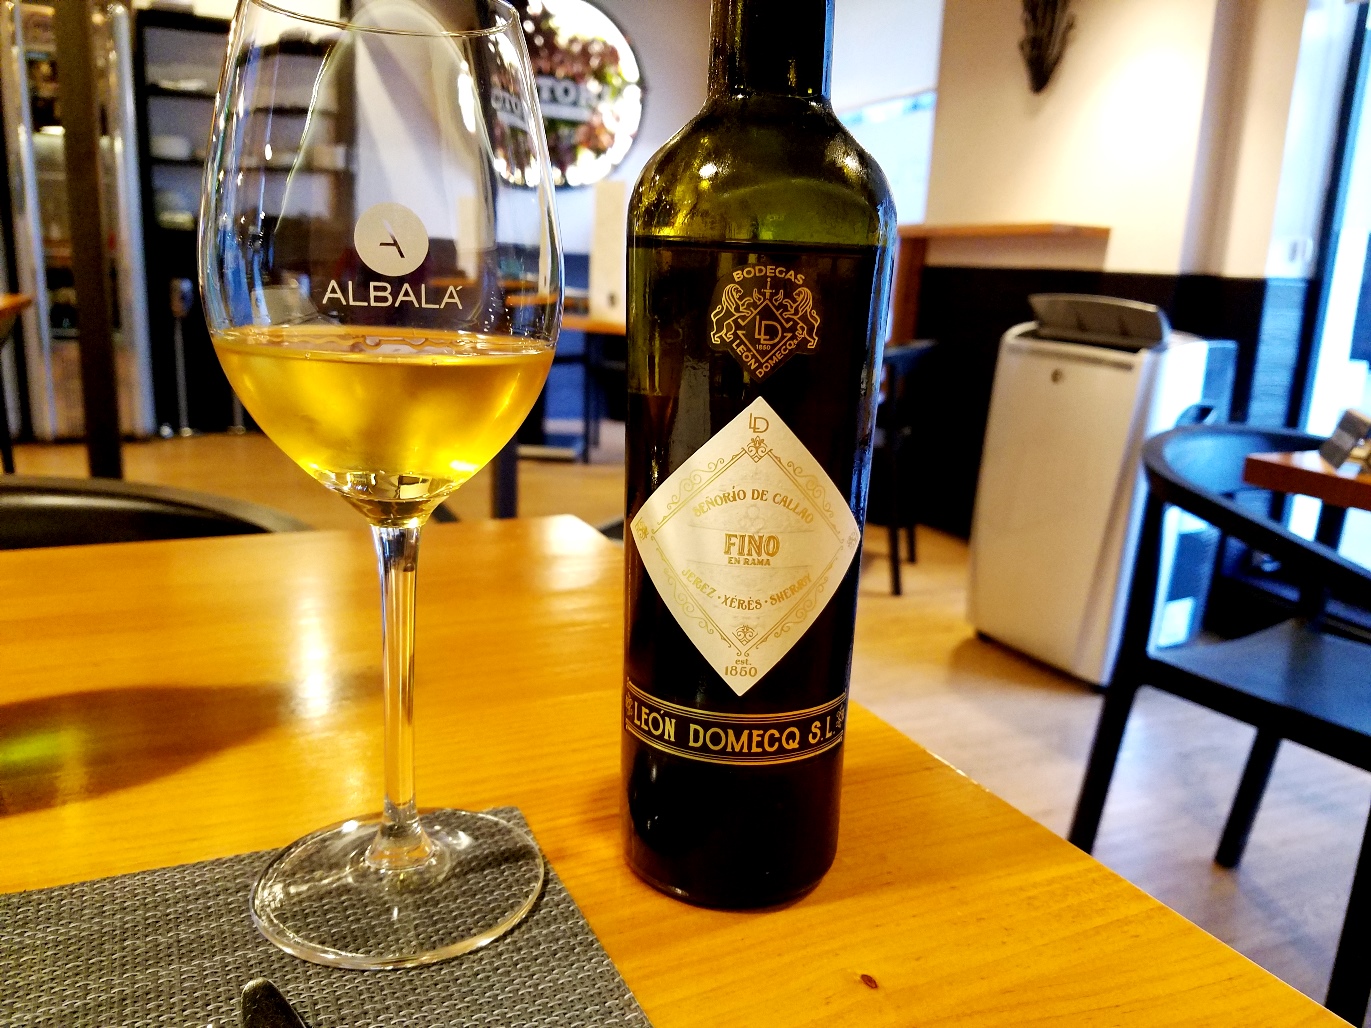 Bodegas León Domecq S.L., Señorío de Callao Fino En Rama Sherry, Andalucía, Spain, Wine Casual